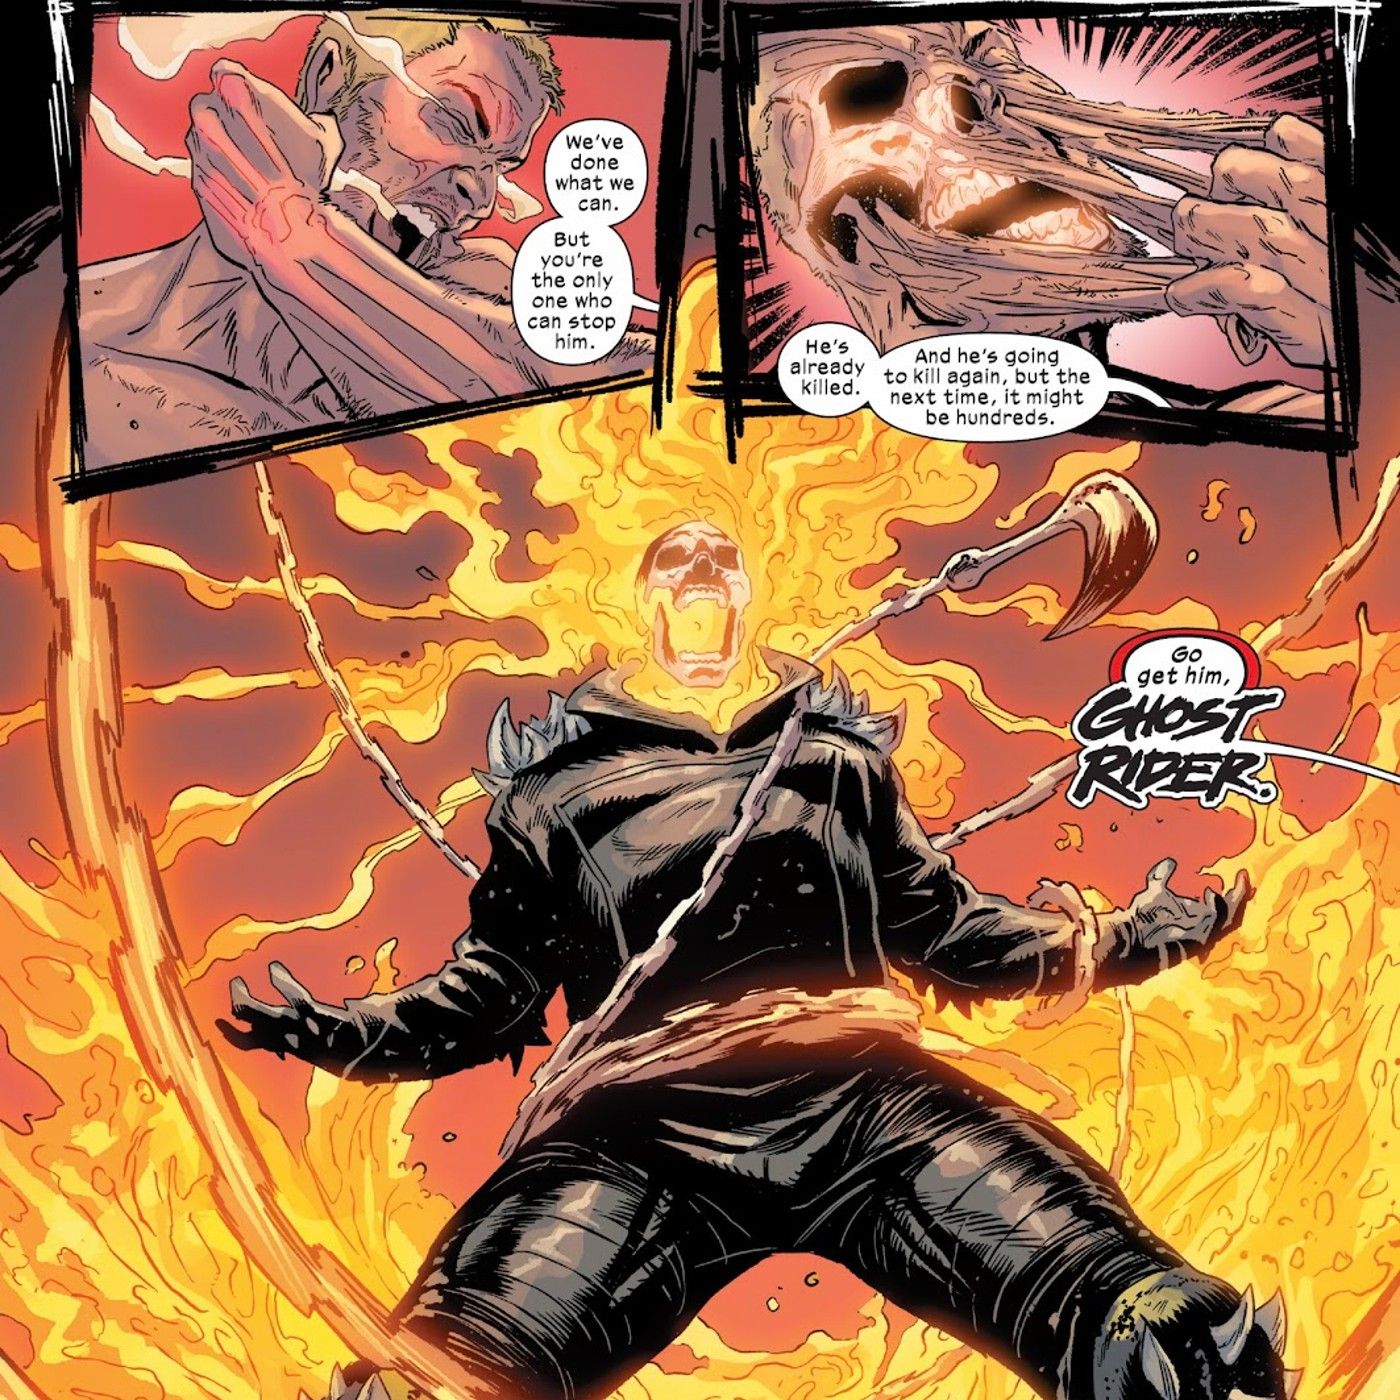 Johnny Blaze schält sein Fleisch ab, um Ghost Rider zu werden